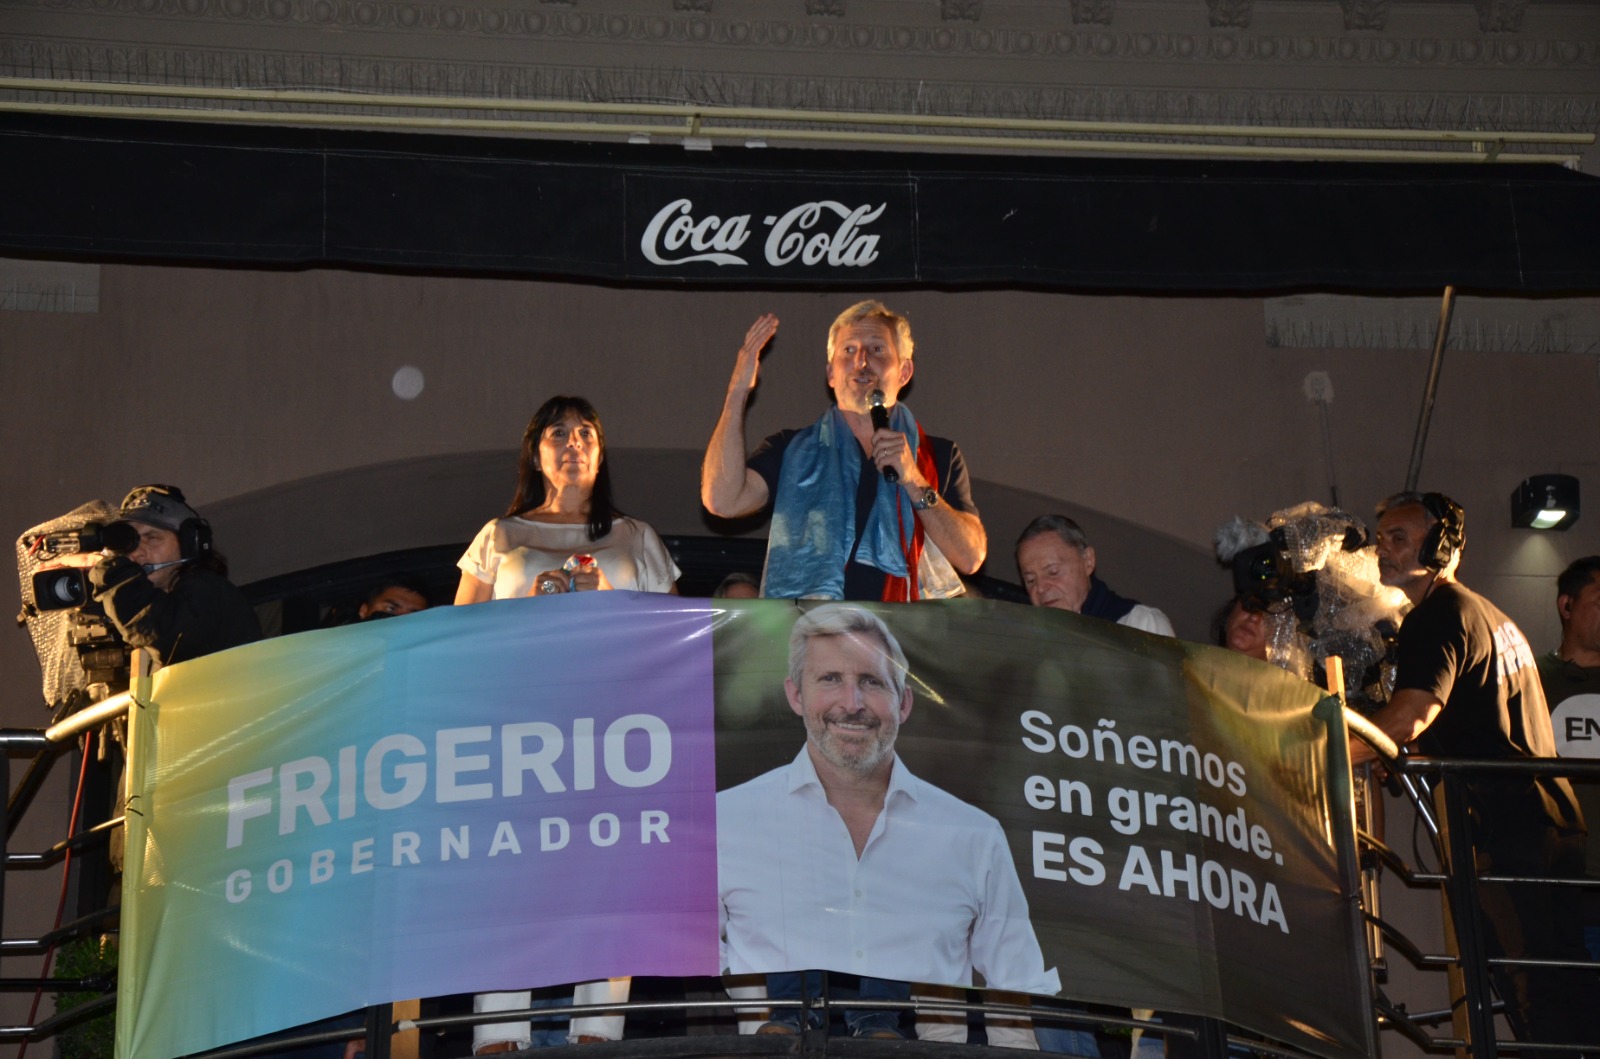 Entre Ríos: Frigerio derrotó a Bahl y puso fin a 20 años de gobiernos peronistas